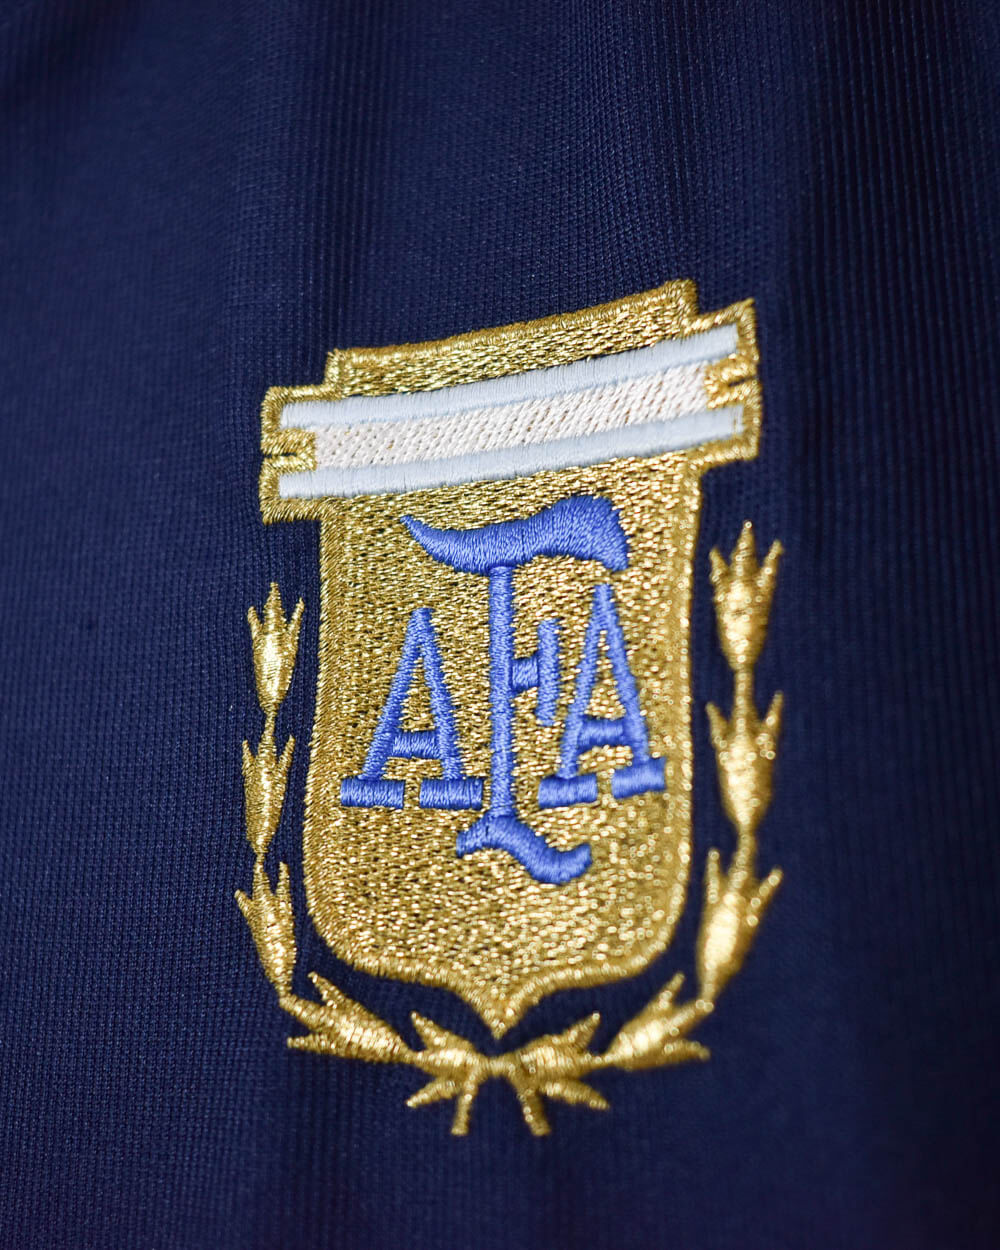 Navy Adidas Argentina 2001/02 Away Football Shirt - Large